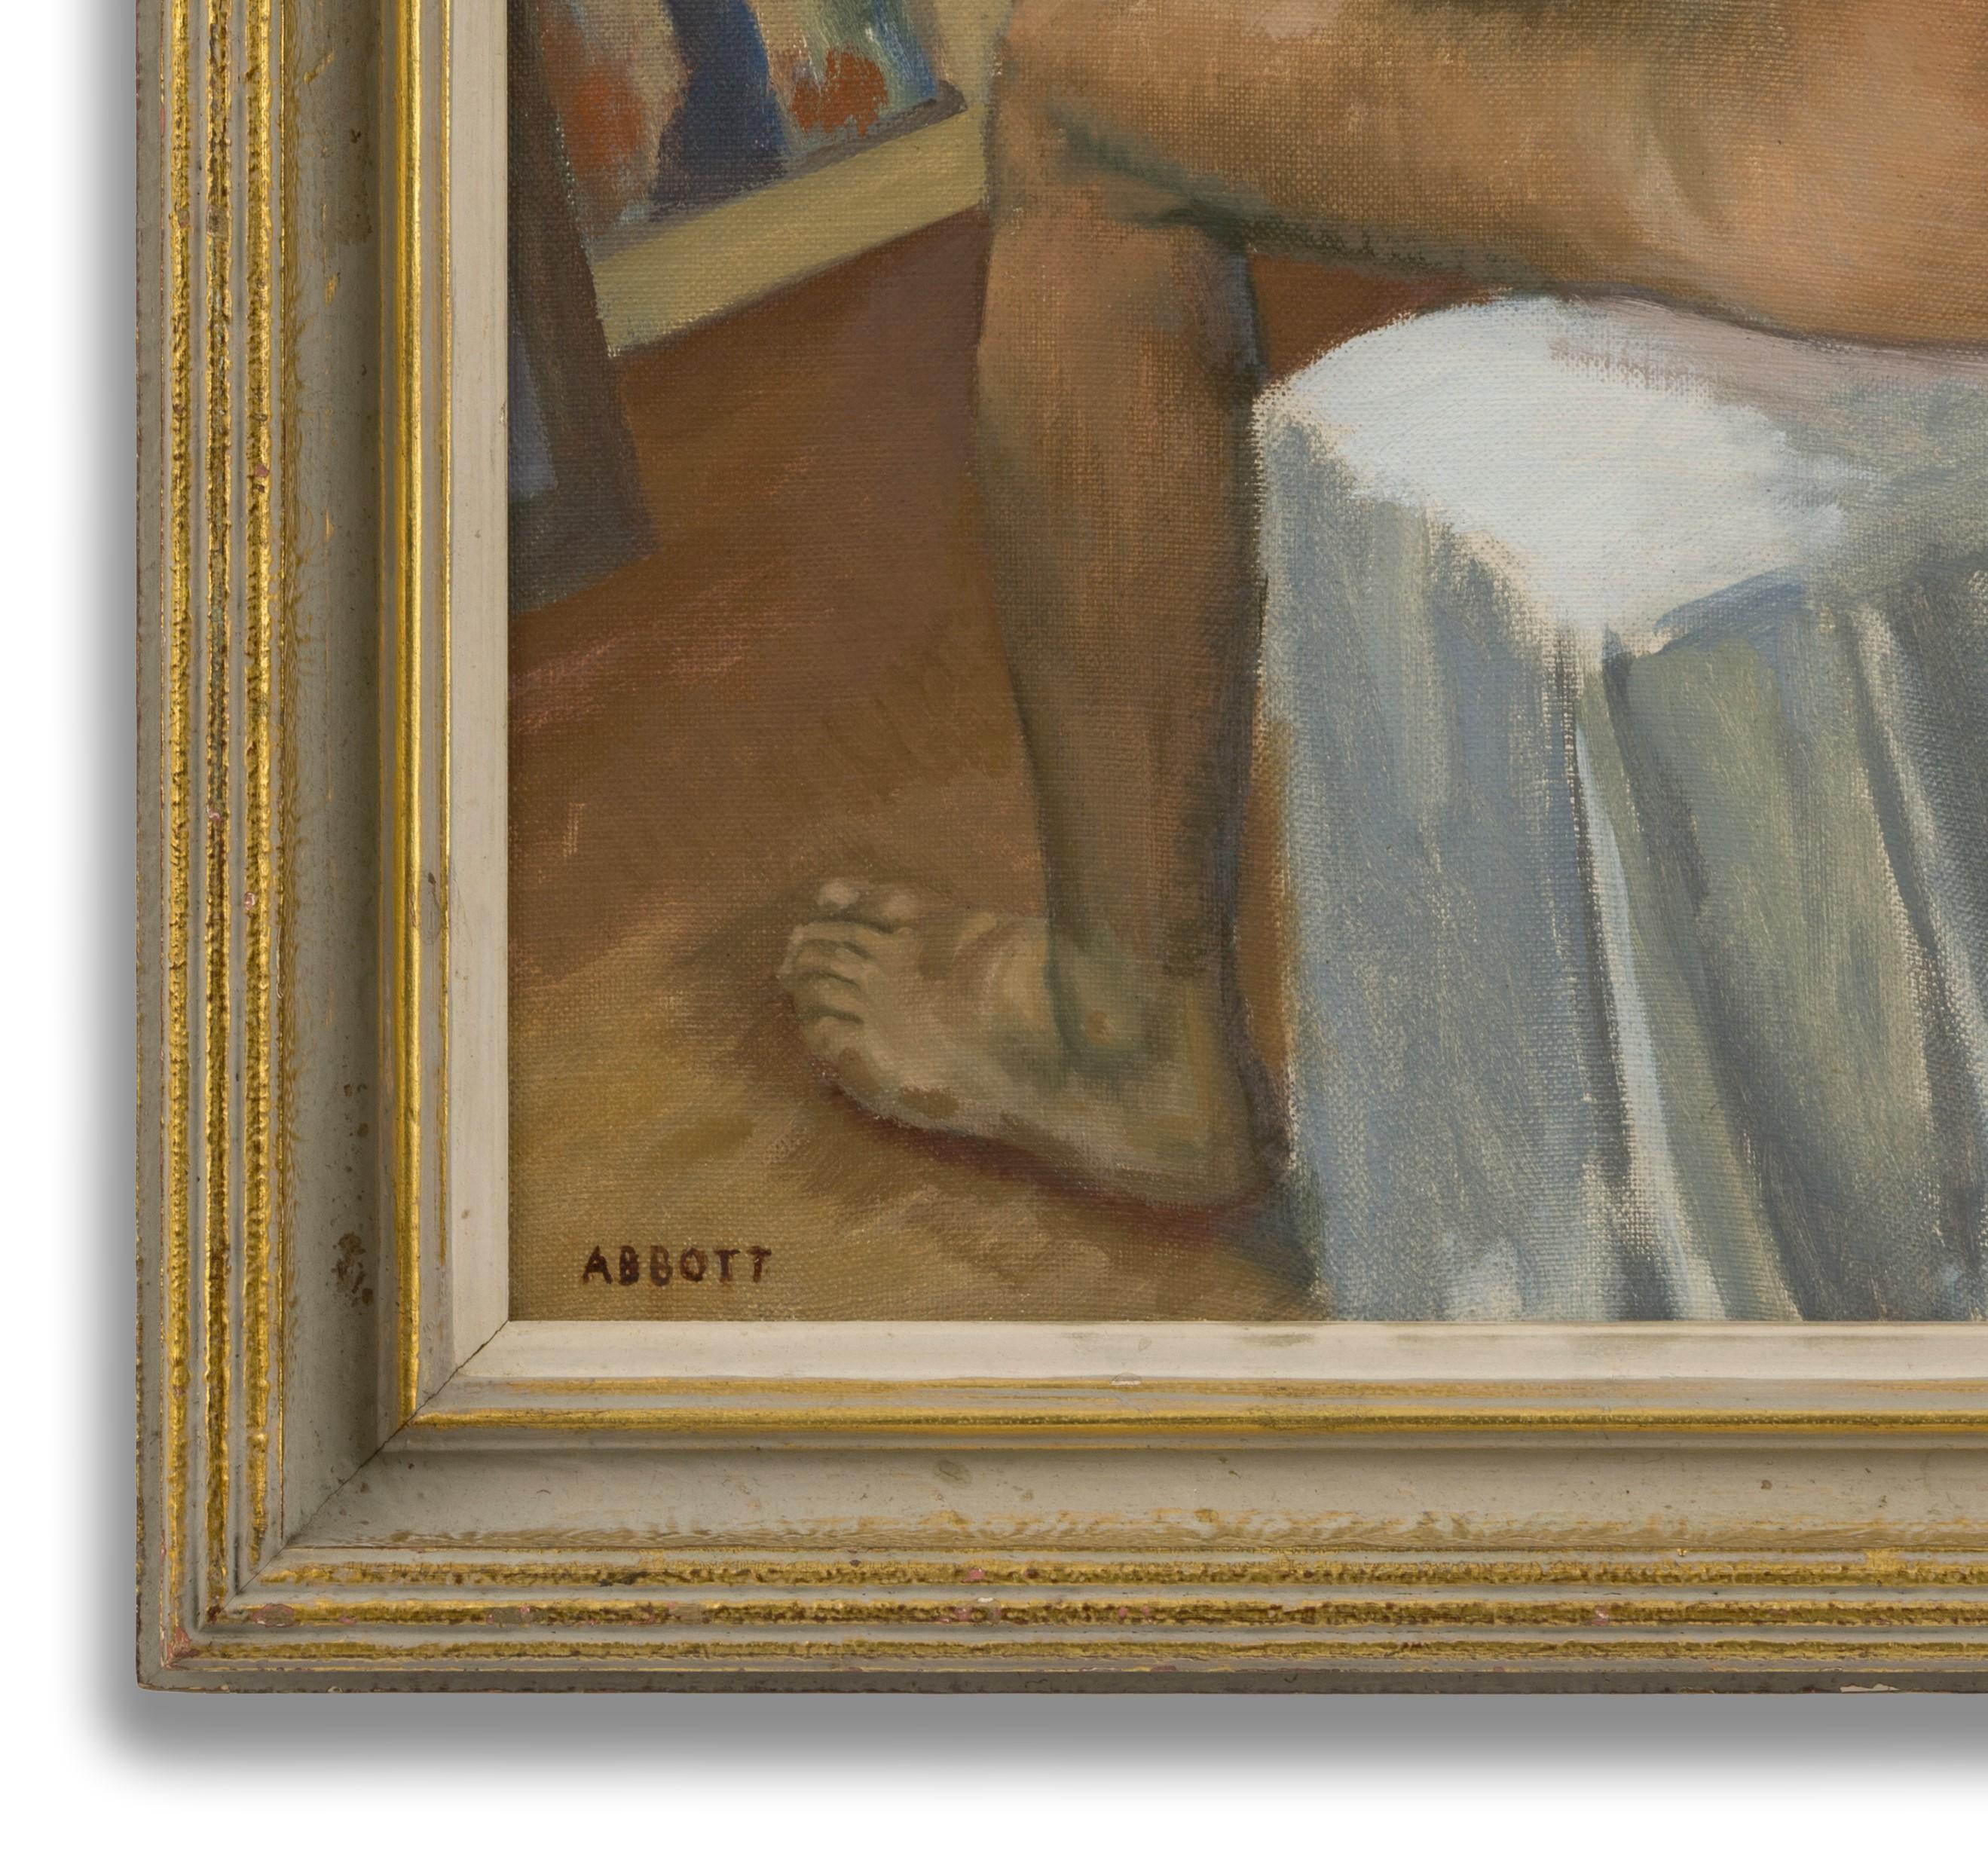 Öl auf Leinwand, signiert unten links, 59cm x 49cm (72cm x 62cm gerahmt). 

Der australische Künstler Abbott, der in den 1930er Jahren an der Royal Academy in London studiert hat, ist ein Meister der Porträt-, Stillleben- und Genremalerei. Nachdem